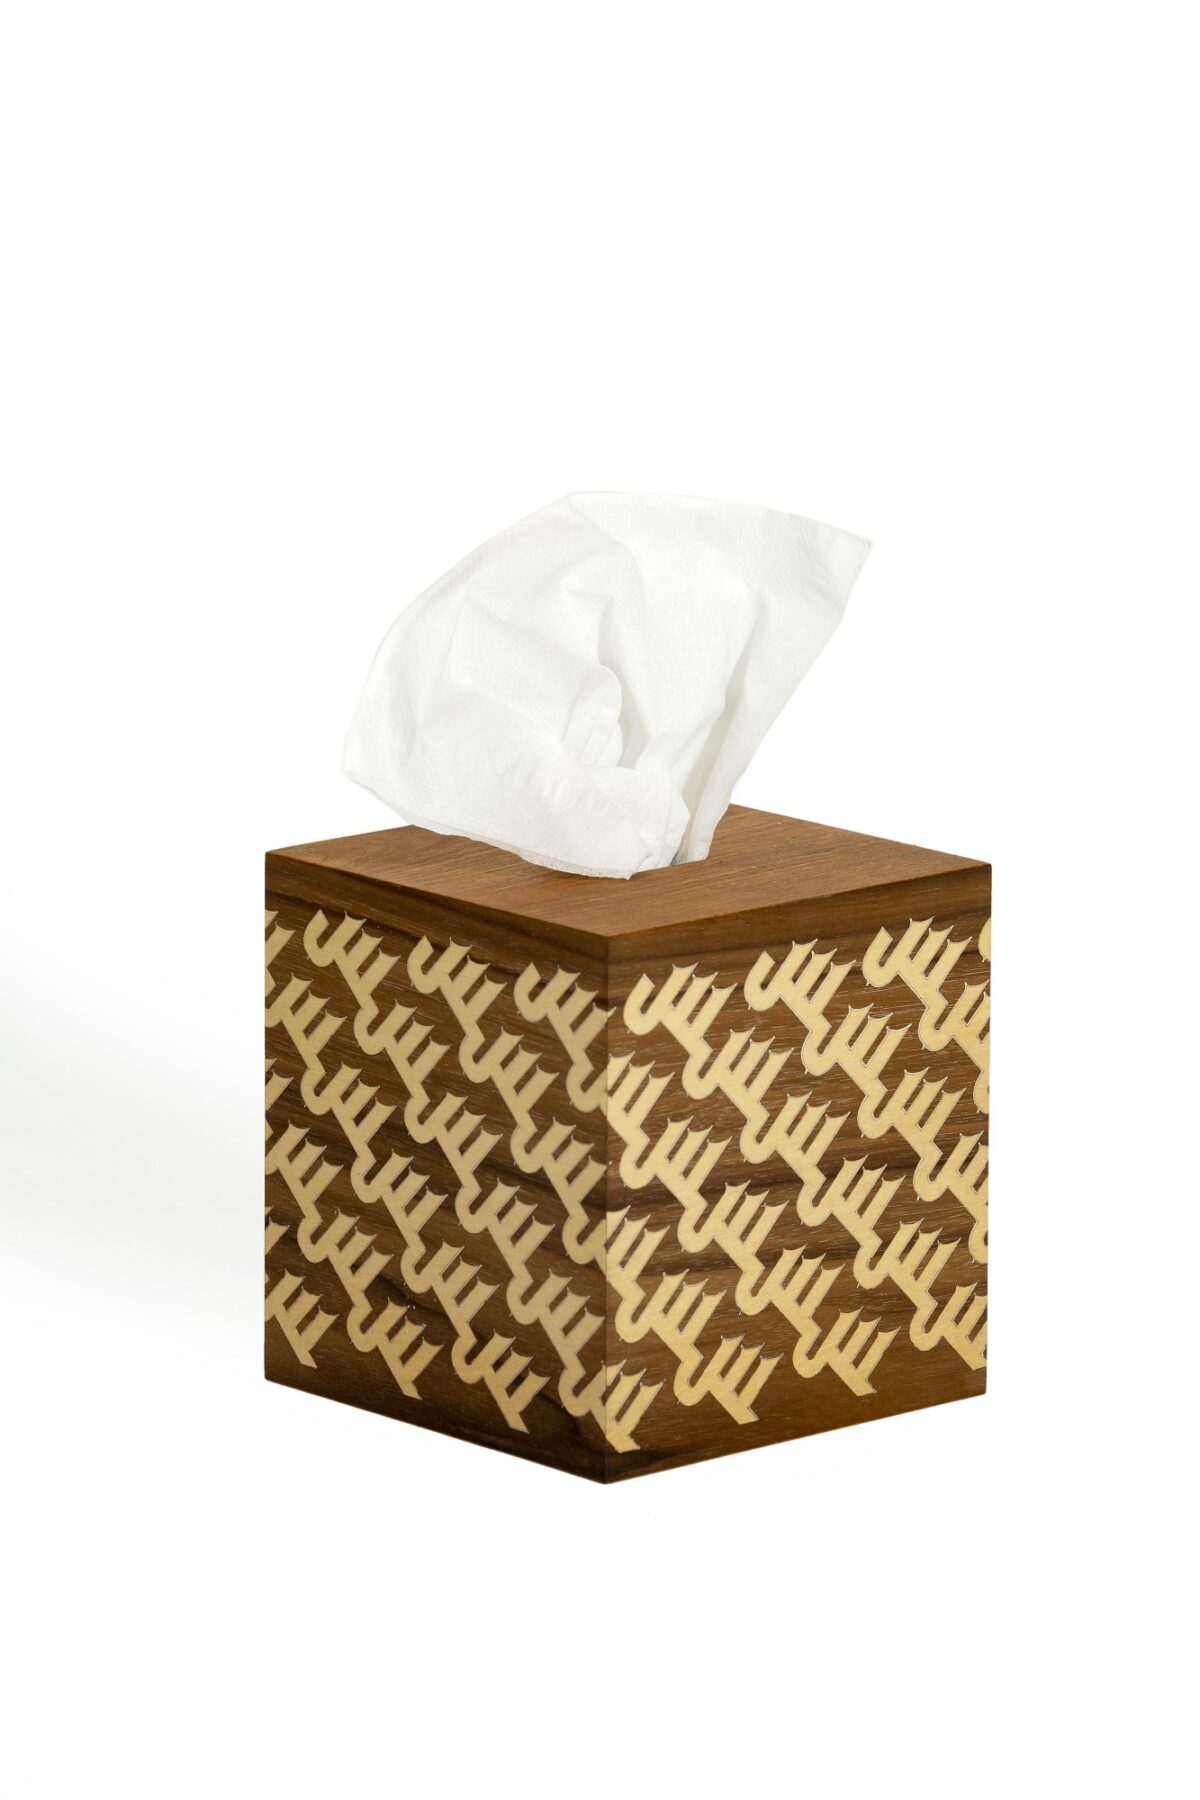 alt="fancy tissue holder gold"